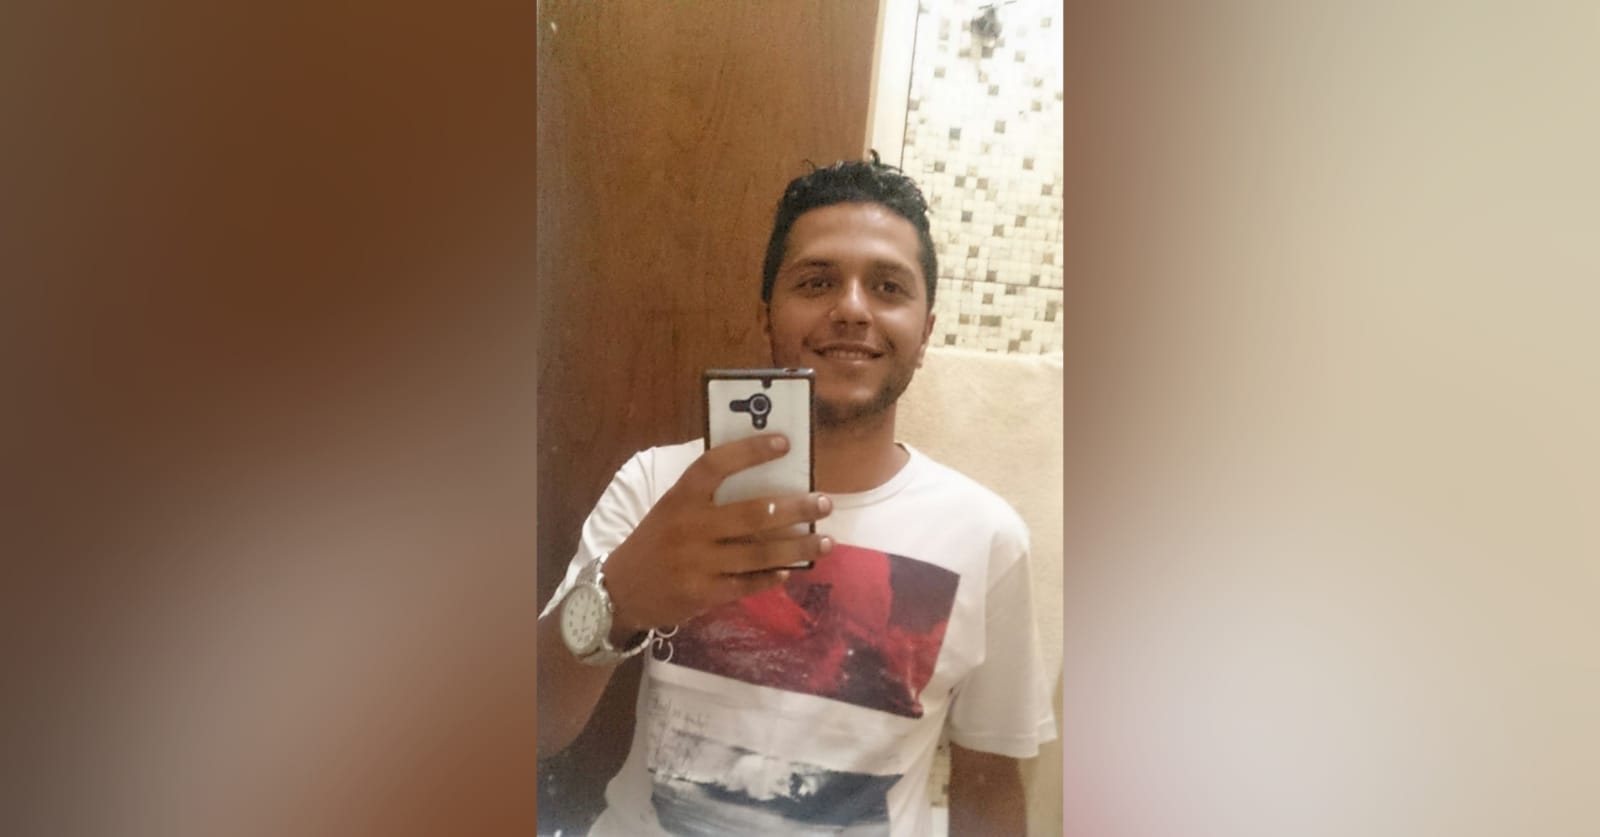 Guaicurus News - 'Gente boa demais': amigos se despedem de jovem morto em Fátima do Sul 